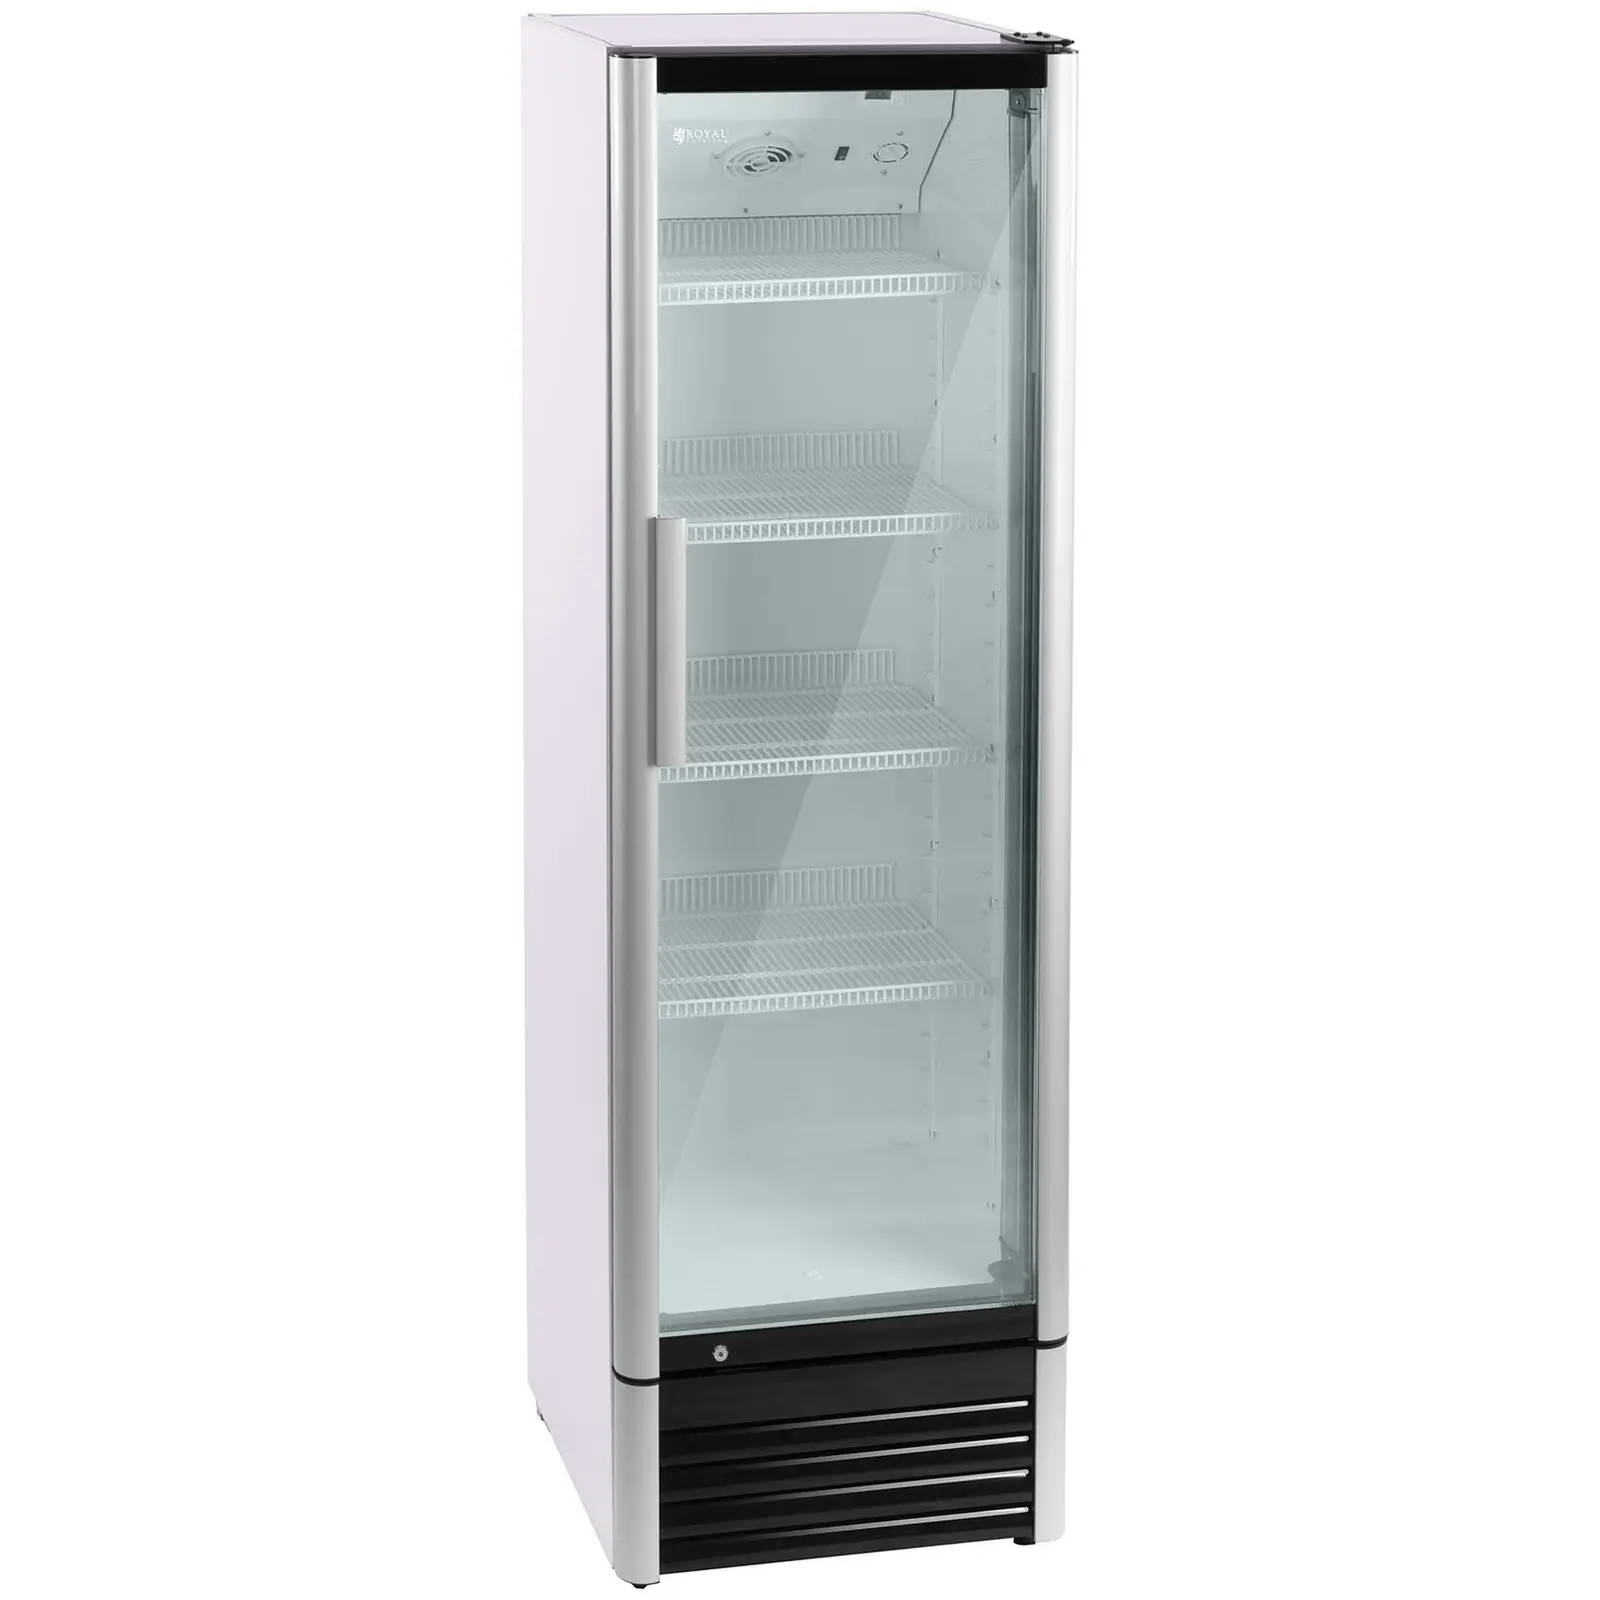 Komercialni hladilnik za pijačo - 320 L - LED - aluminijast okvir